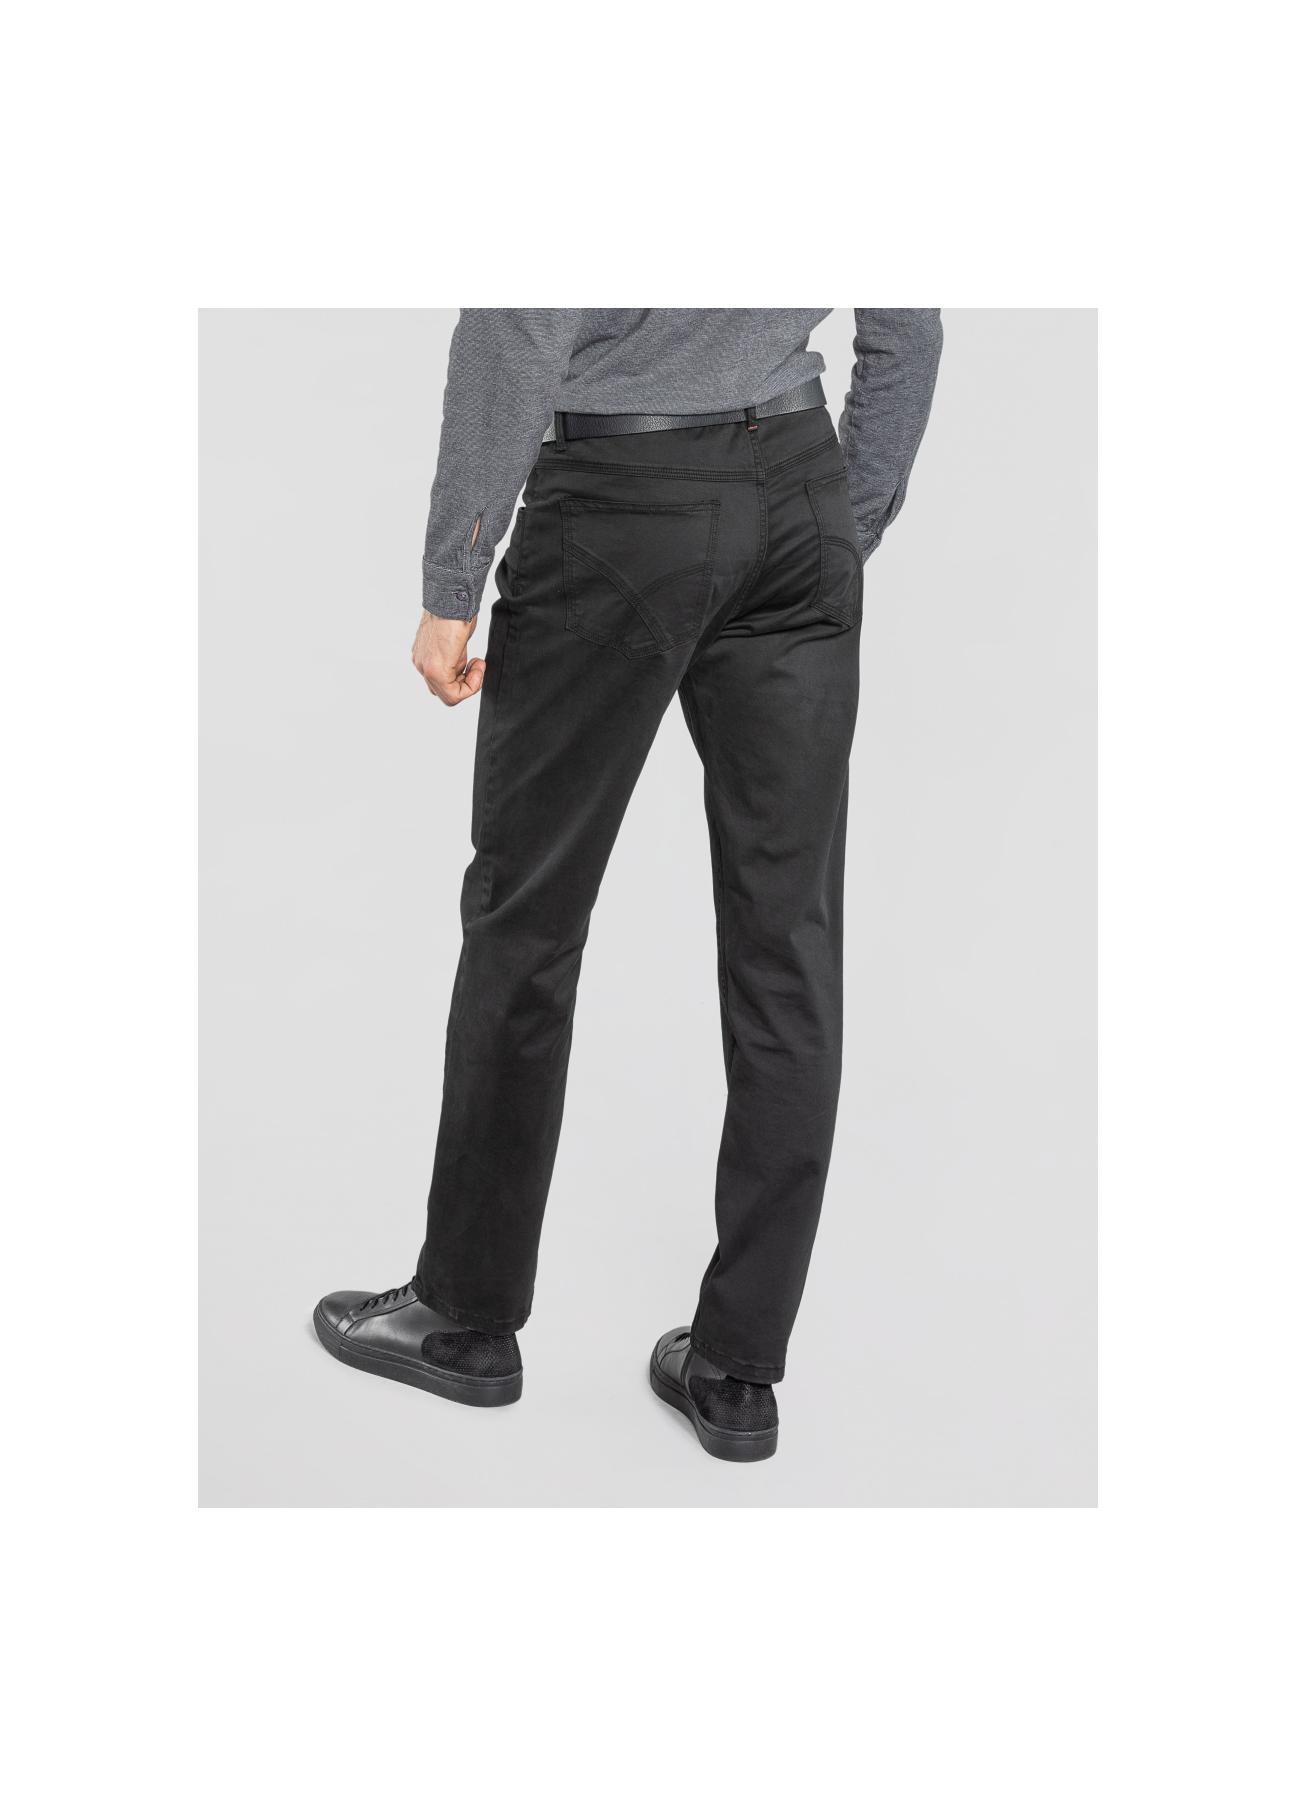 Spodnie męskie SPOMT-0056-99(Z20)